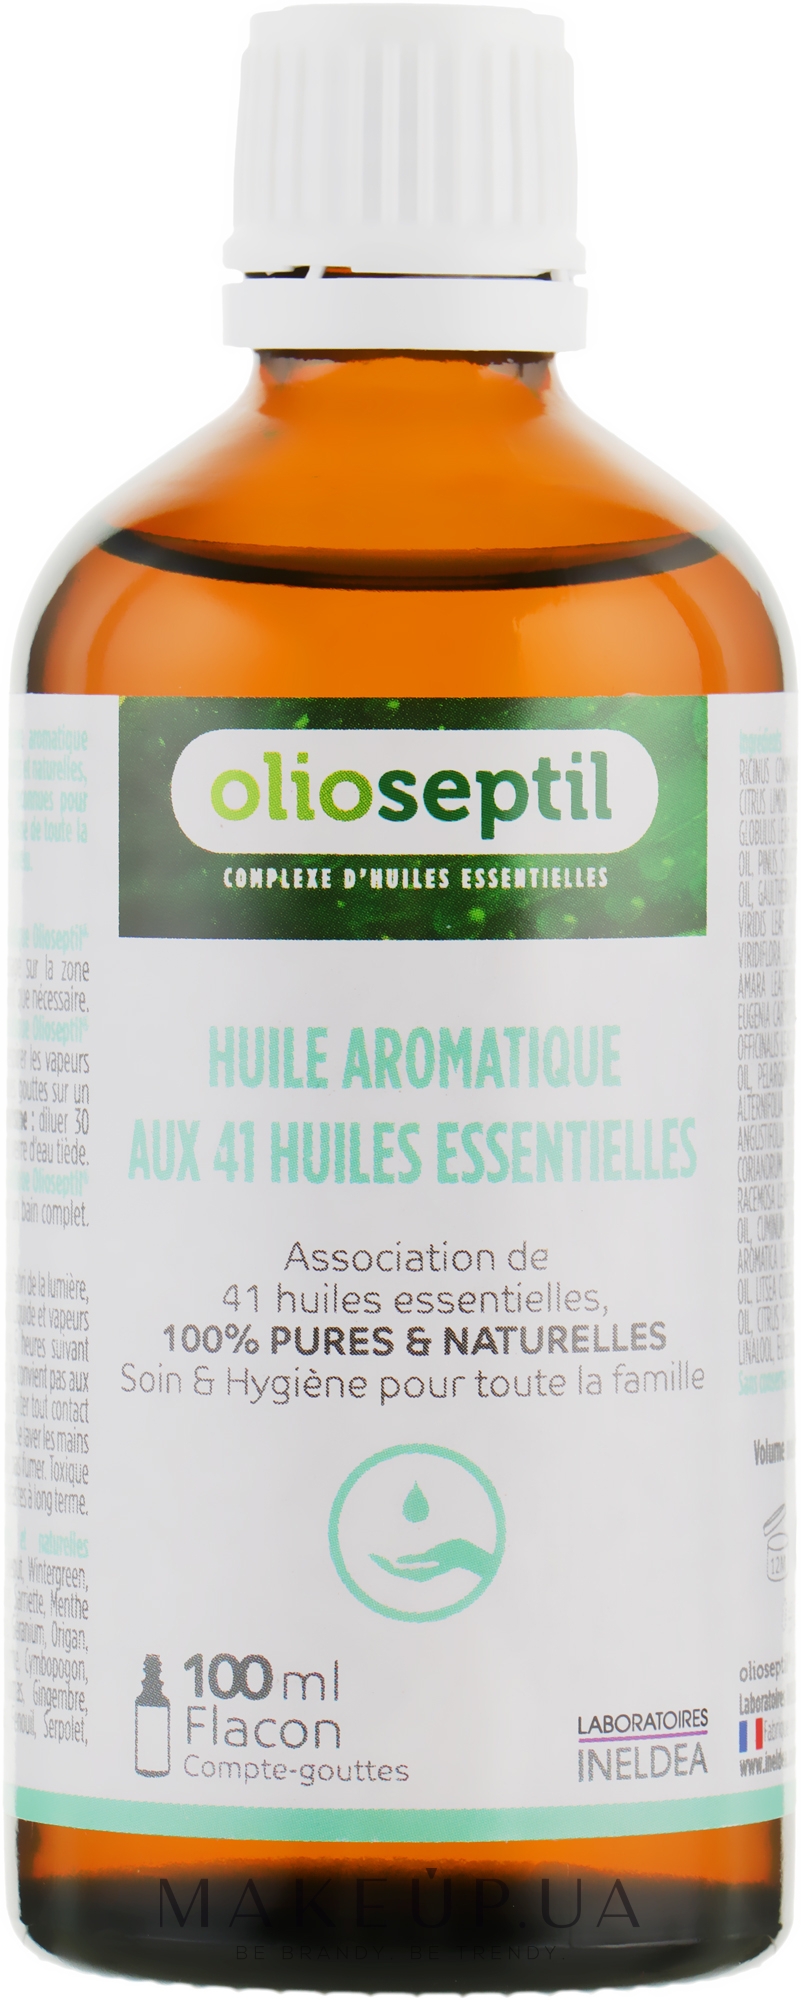 Olioseptil Huile Aromatique Aux 41 Huiles Essentialles  Ароматическое